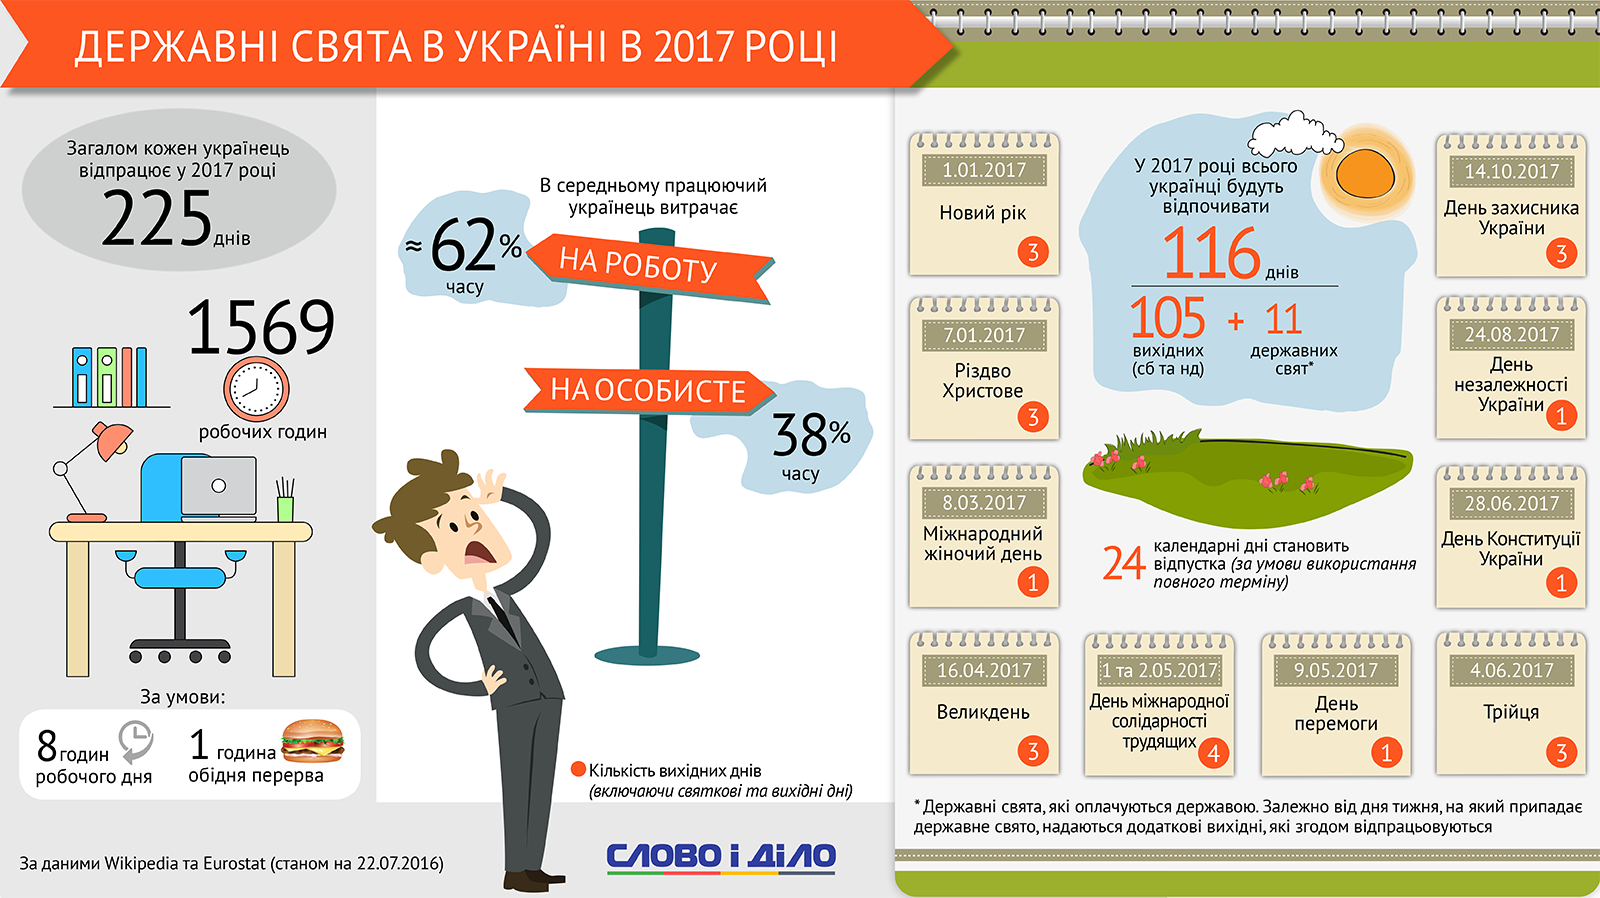 В 2017 году украинцы будут отдыхать 116 дней: 105 выходных и 11 праздников